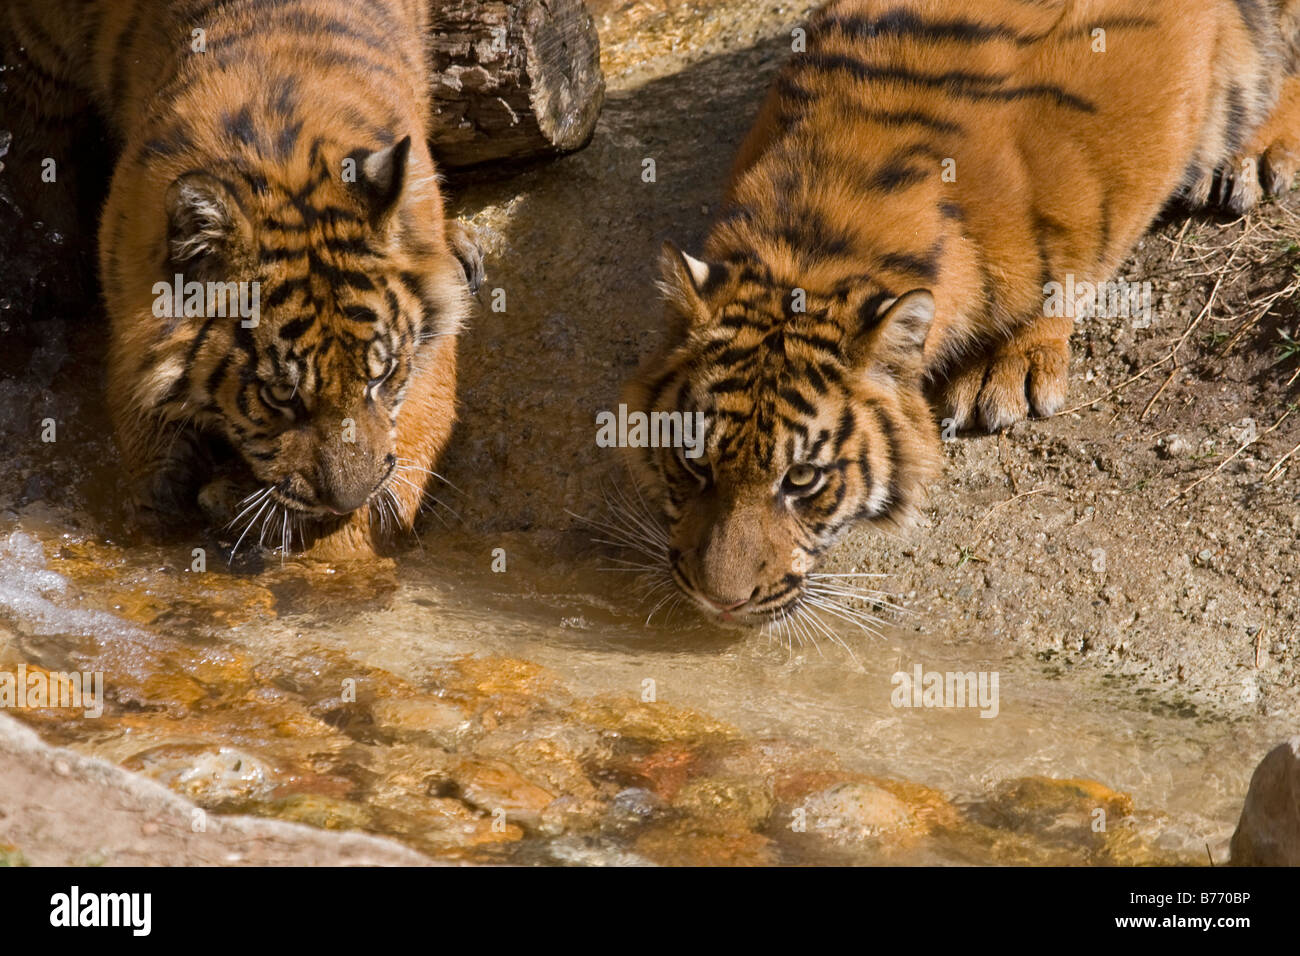 Sumatra due cuccioli di tigre acqua potabile in cattività Foto Stock